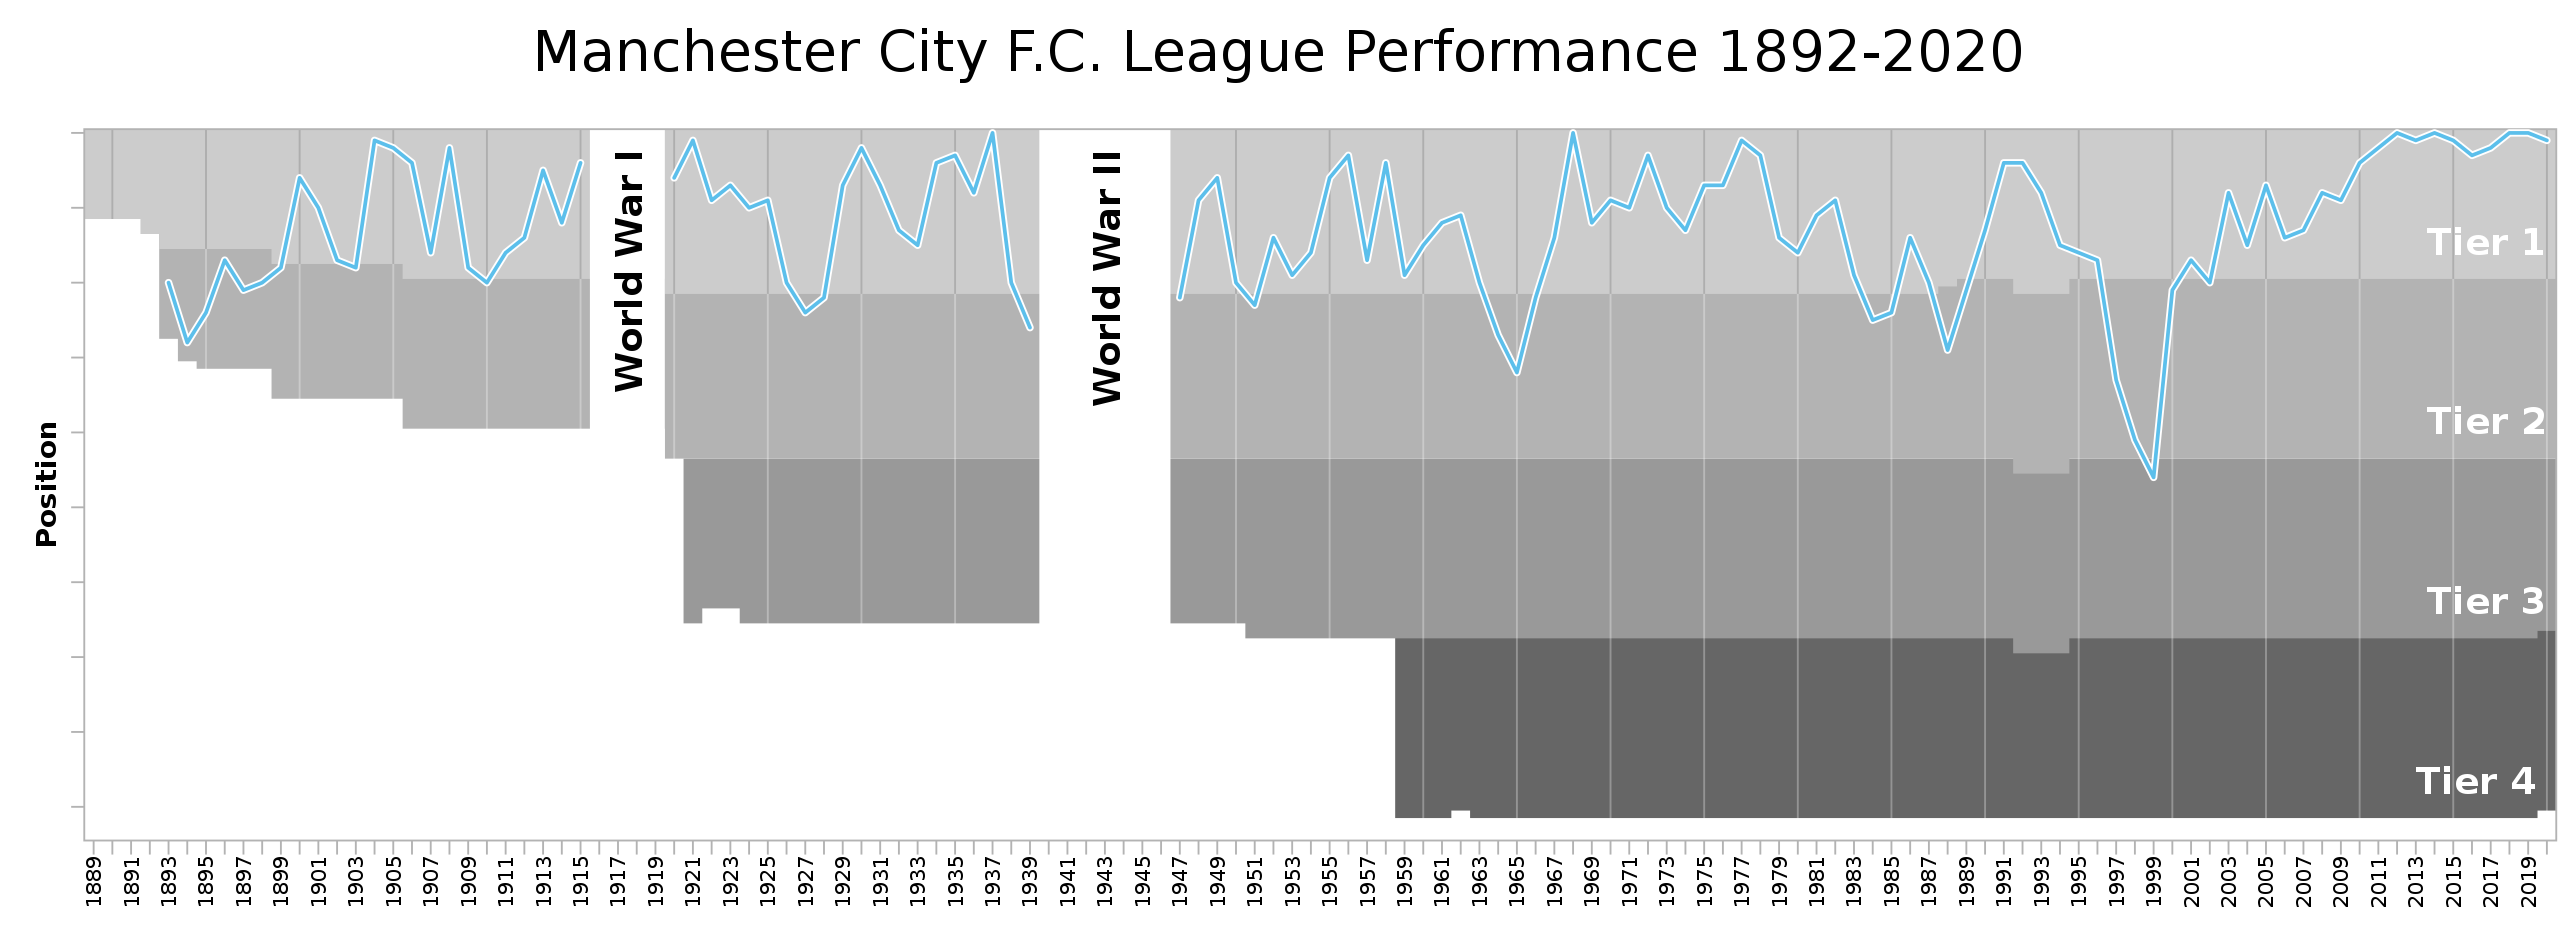 Câu lạc bộ Man City - Khái quát lịch sử, quá trình hình thành phát triển, thành tích và đội hình thi đấu của CLB Manchester City hình ảnh gốc 2